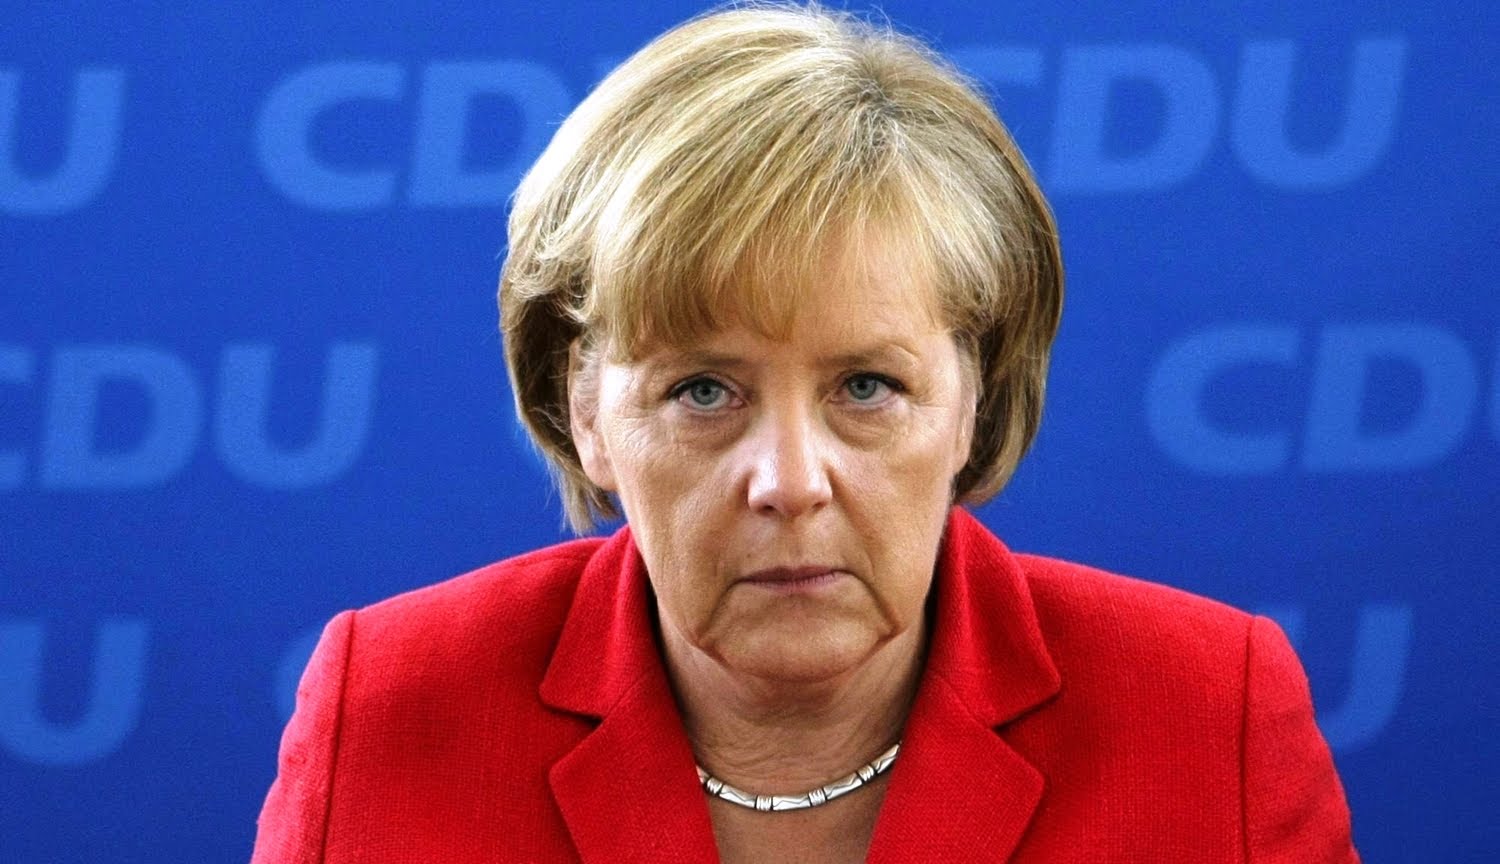 Канцлер Німеччини Ангела Меркель закликала Україну боротися з корупцією і зменшити вплив олігархів, кажучи, що німецькі підприємства готові інвестувати, якщо будуть виконані відповідні умови.